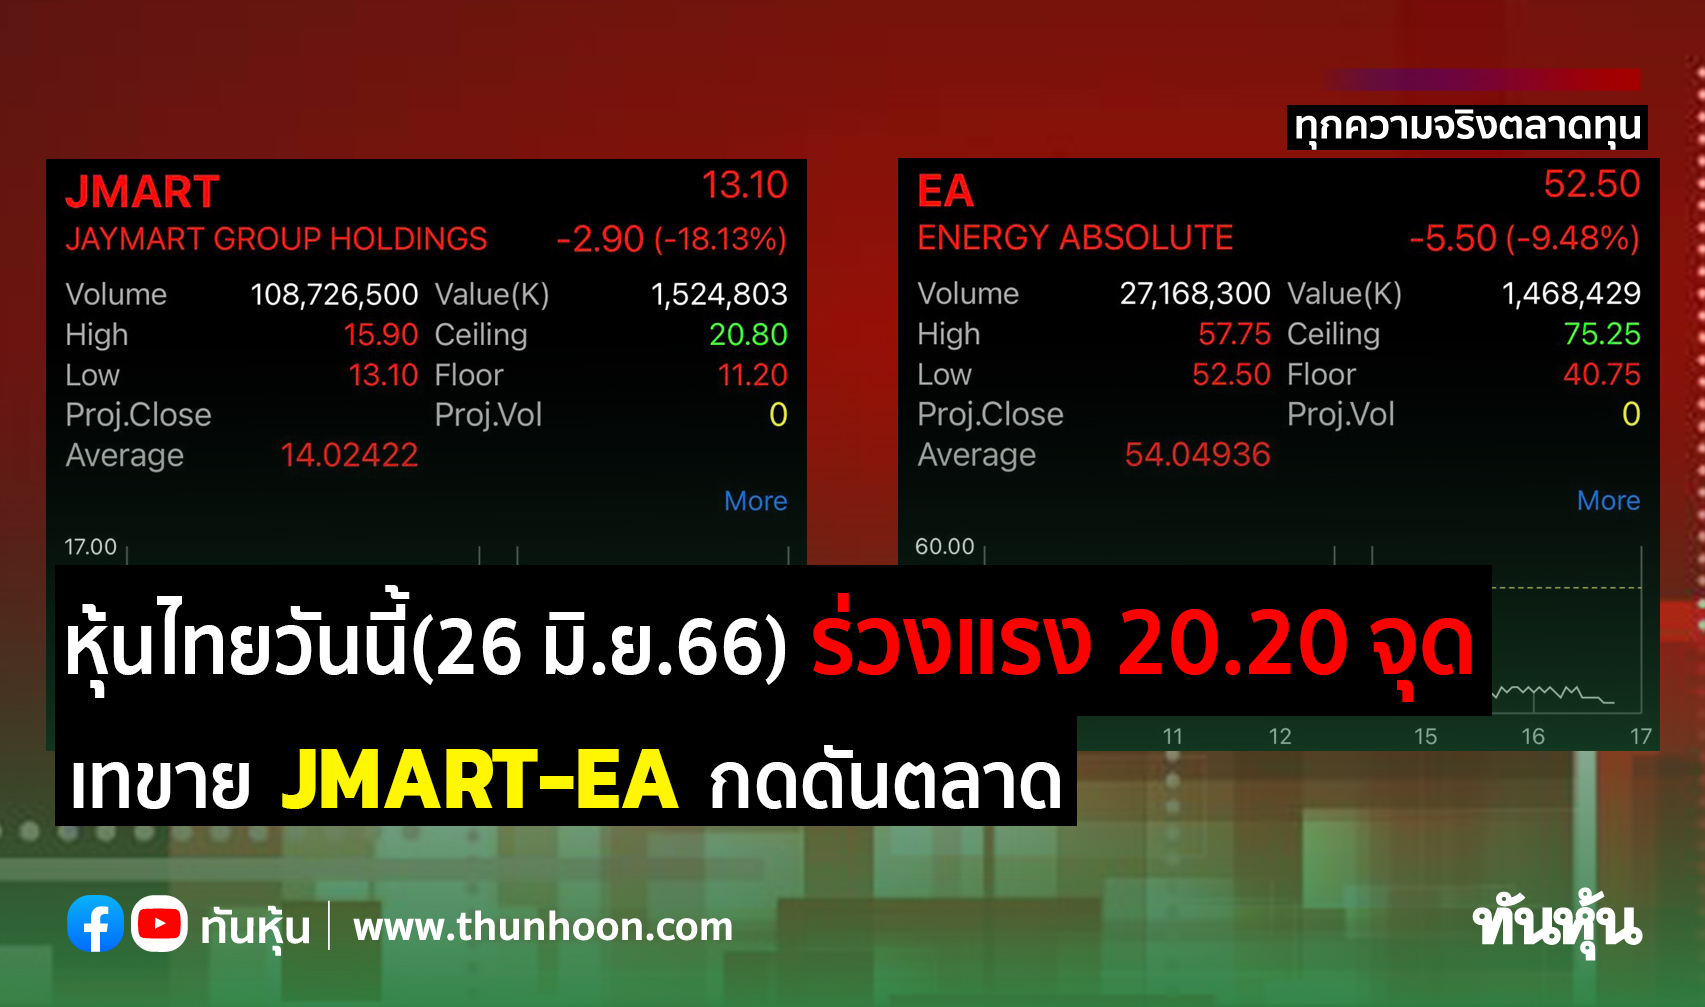 หุ้นไทยวันนี้(26 มิ.ย.66) ร่วงแรง 20.20 จุด เทขาย Jmart-Ea กดดันตลาด -  Thunhoon